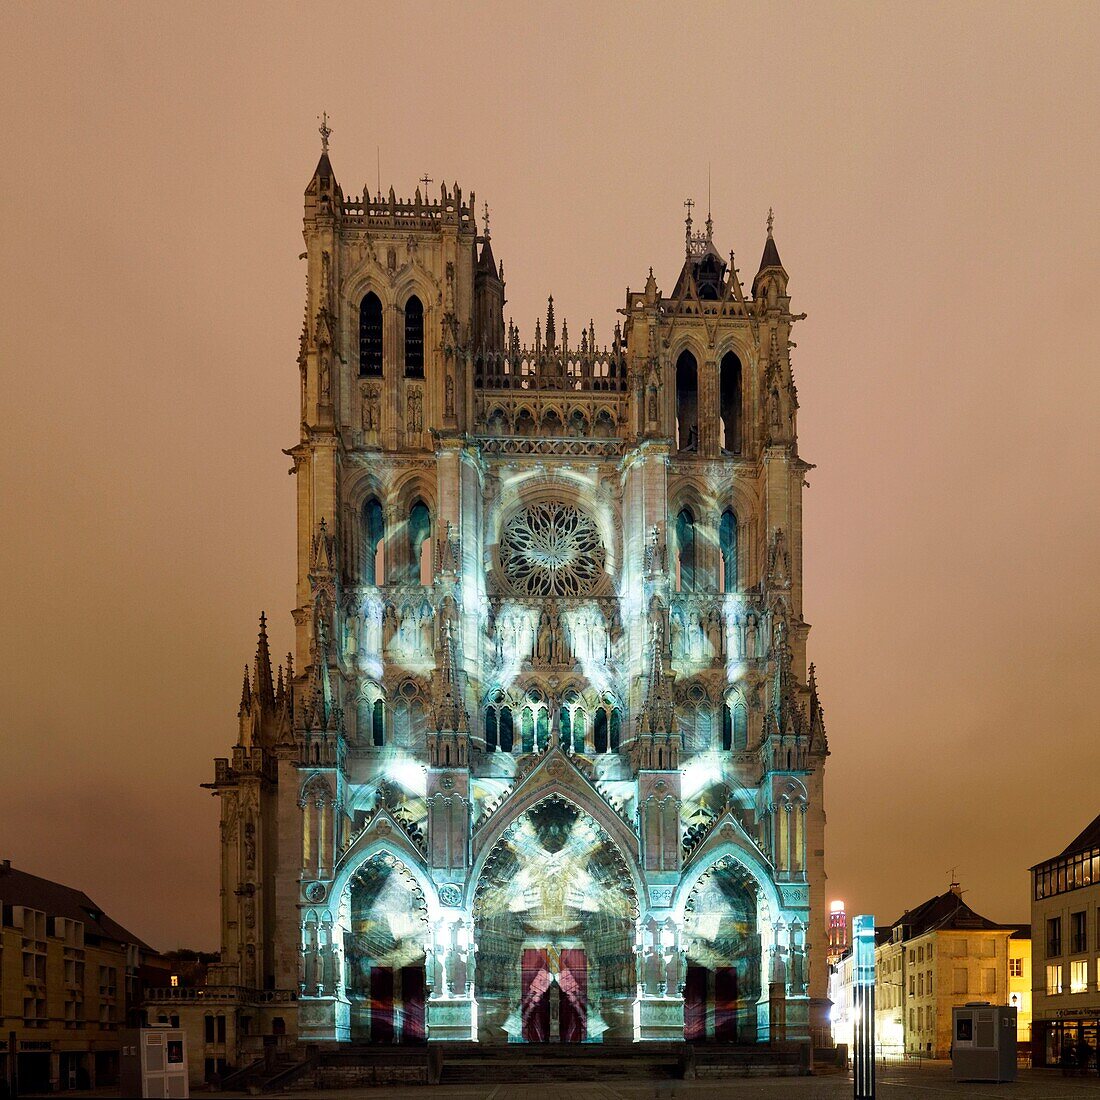 Frankreich,Somme,Amiens,Kathedrale Notre-Dame,Juwel der gotischen Kunst,von der UNESCO zum Weltkulturerbe erklärt,Ton- und Lichtshow